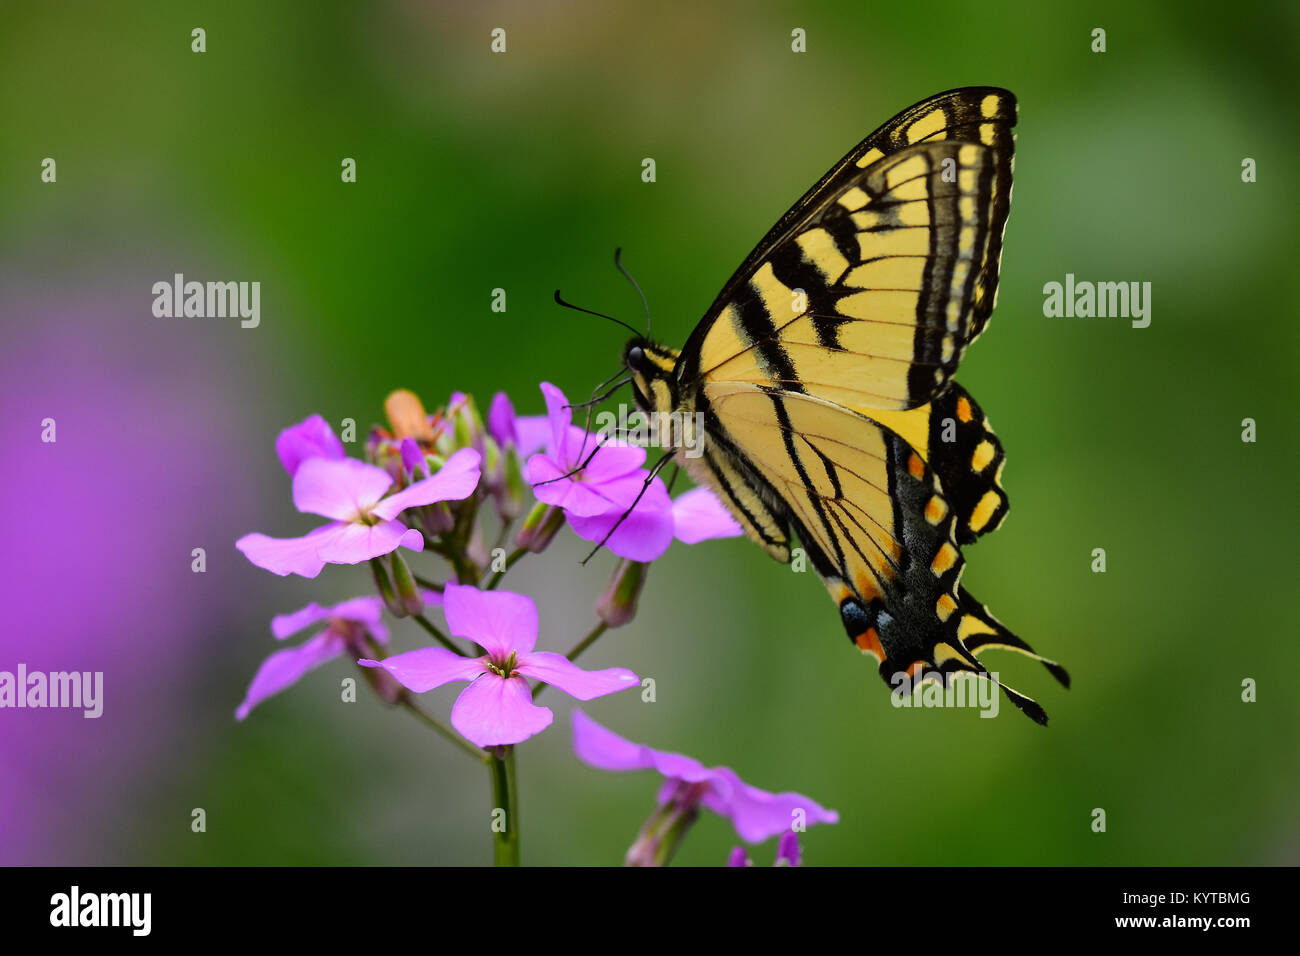 Tigre orientale a coda di rondine, butterfly papilio glaucus, alimentando il Dame's Rocket fiori in un giardino in speculatore, New York STATI UNITI D'AMERICA Foto Stock